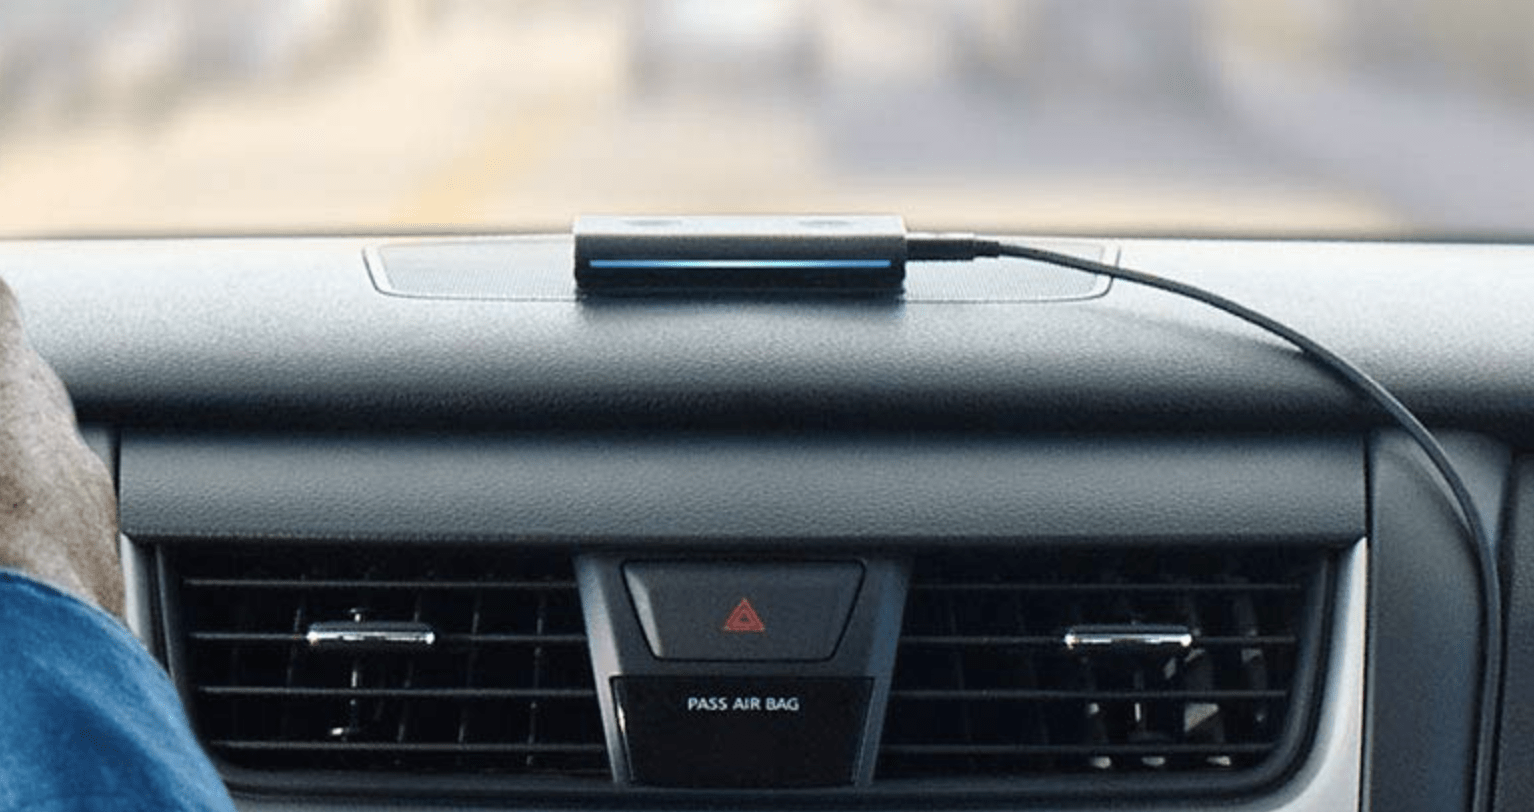 Siri et Alexa côte à côte dans les voitures avec système embarqué Panasonic  SkipGen